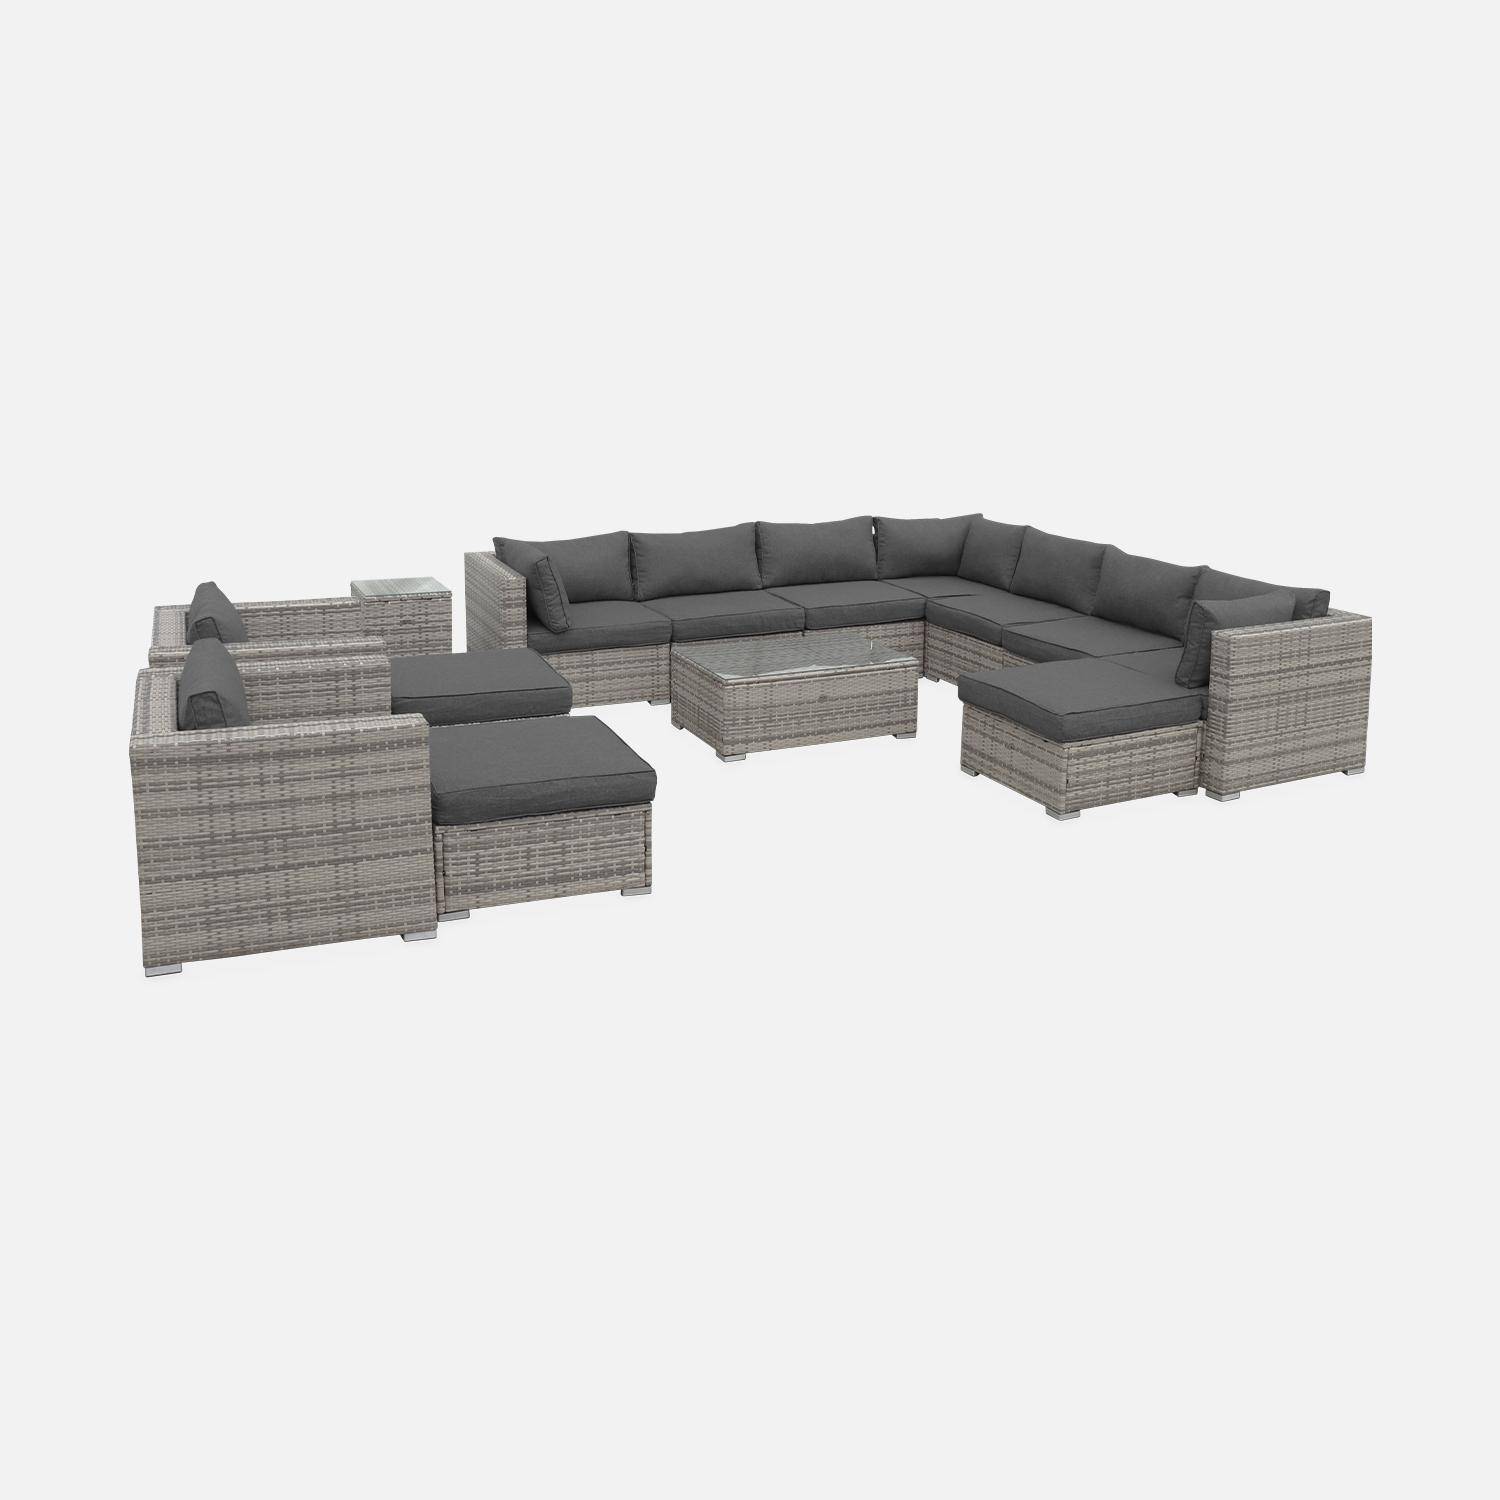 Mueble de jardin, conjunto sofa de exterior, ratan sintetico, resina trenzada - Varios tonos de gris - 12 a 14 plazas - TRIPOLI Photo4